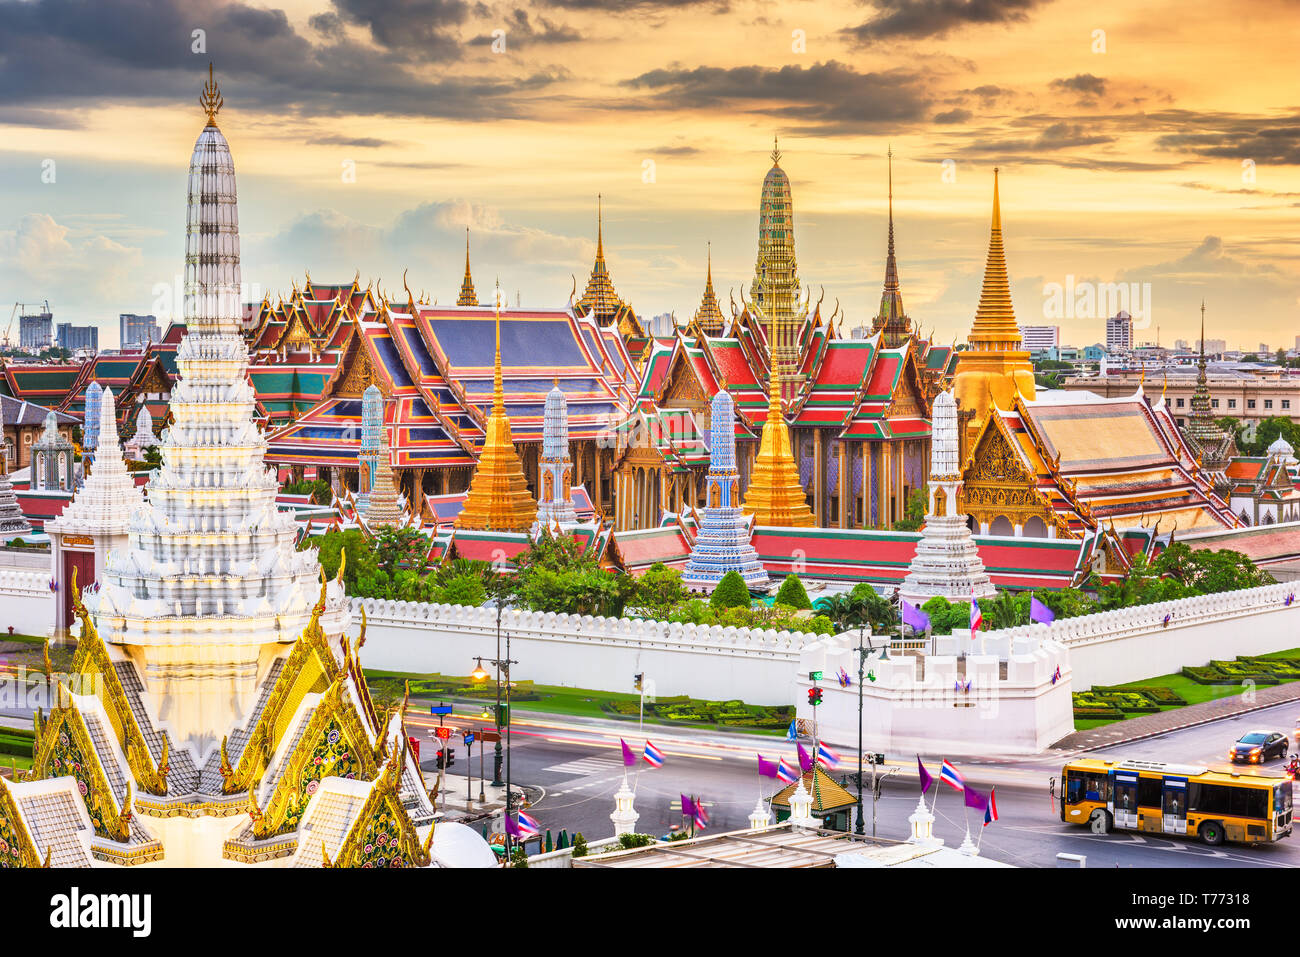 Bangkok, Thailand at the Temple of the Emerald Buddha and Grand Palace at dusk. Stock Photo